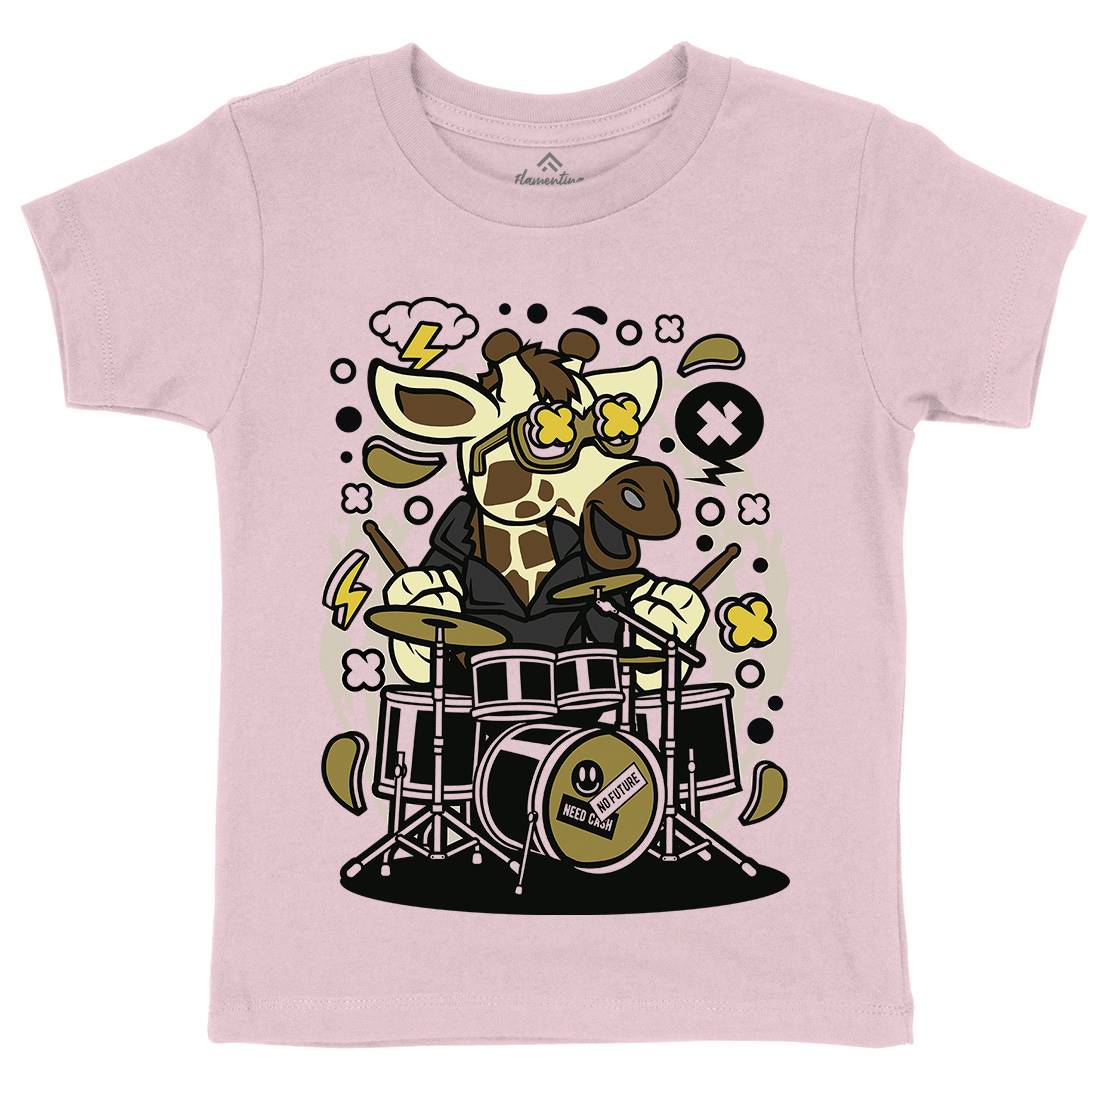 Giraffe Drummer Kids Crew Neck T-Shirt Music C552